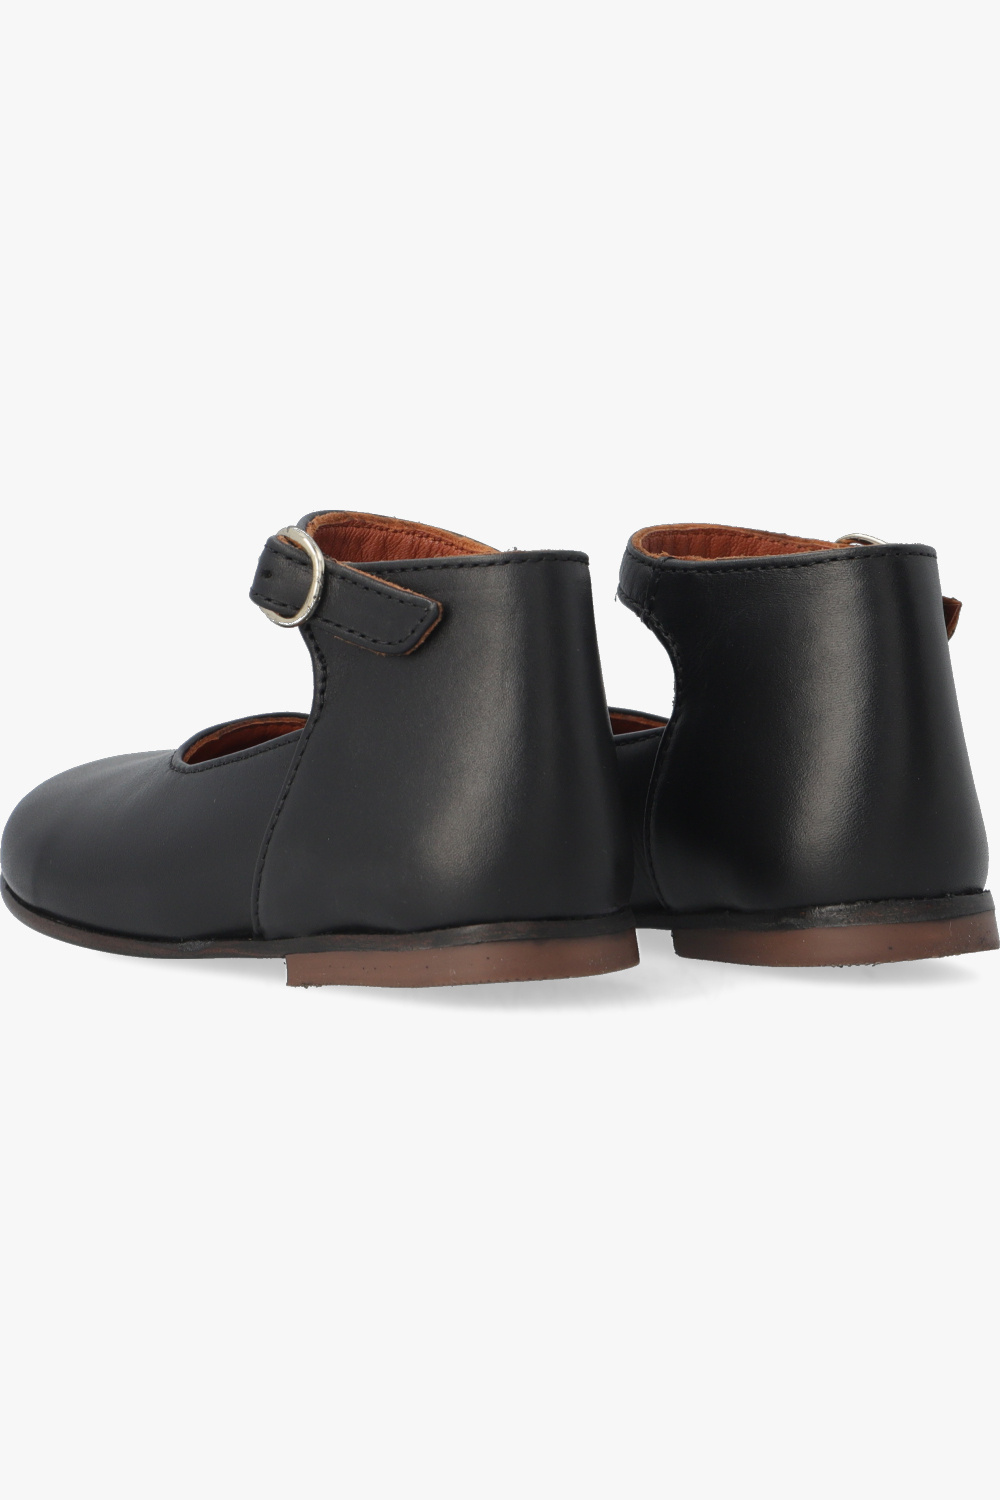 Bonpoint  ‘Bijou’ leather fastening shoes